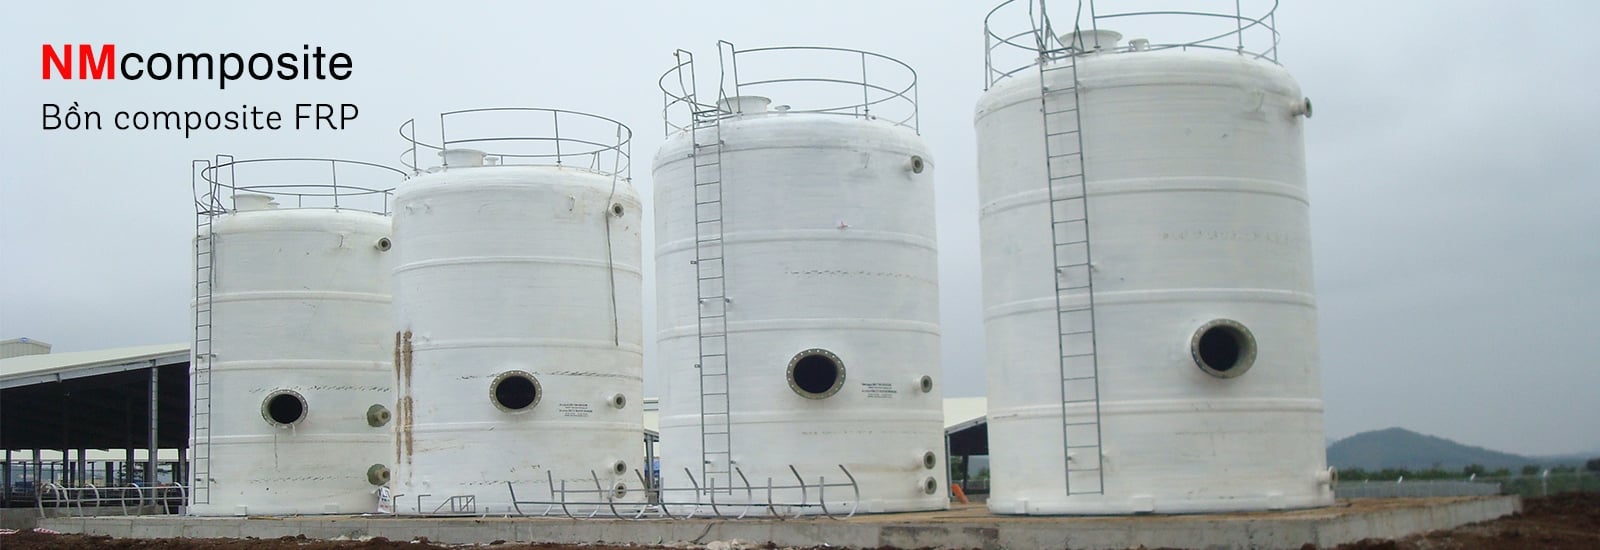 Bồn composite FRP chứa hóa chất, thực phẩm, xử lý nước thải